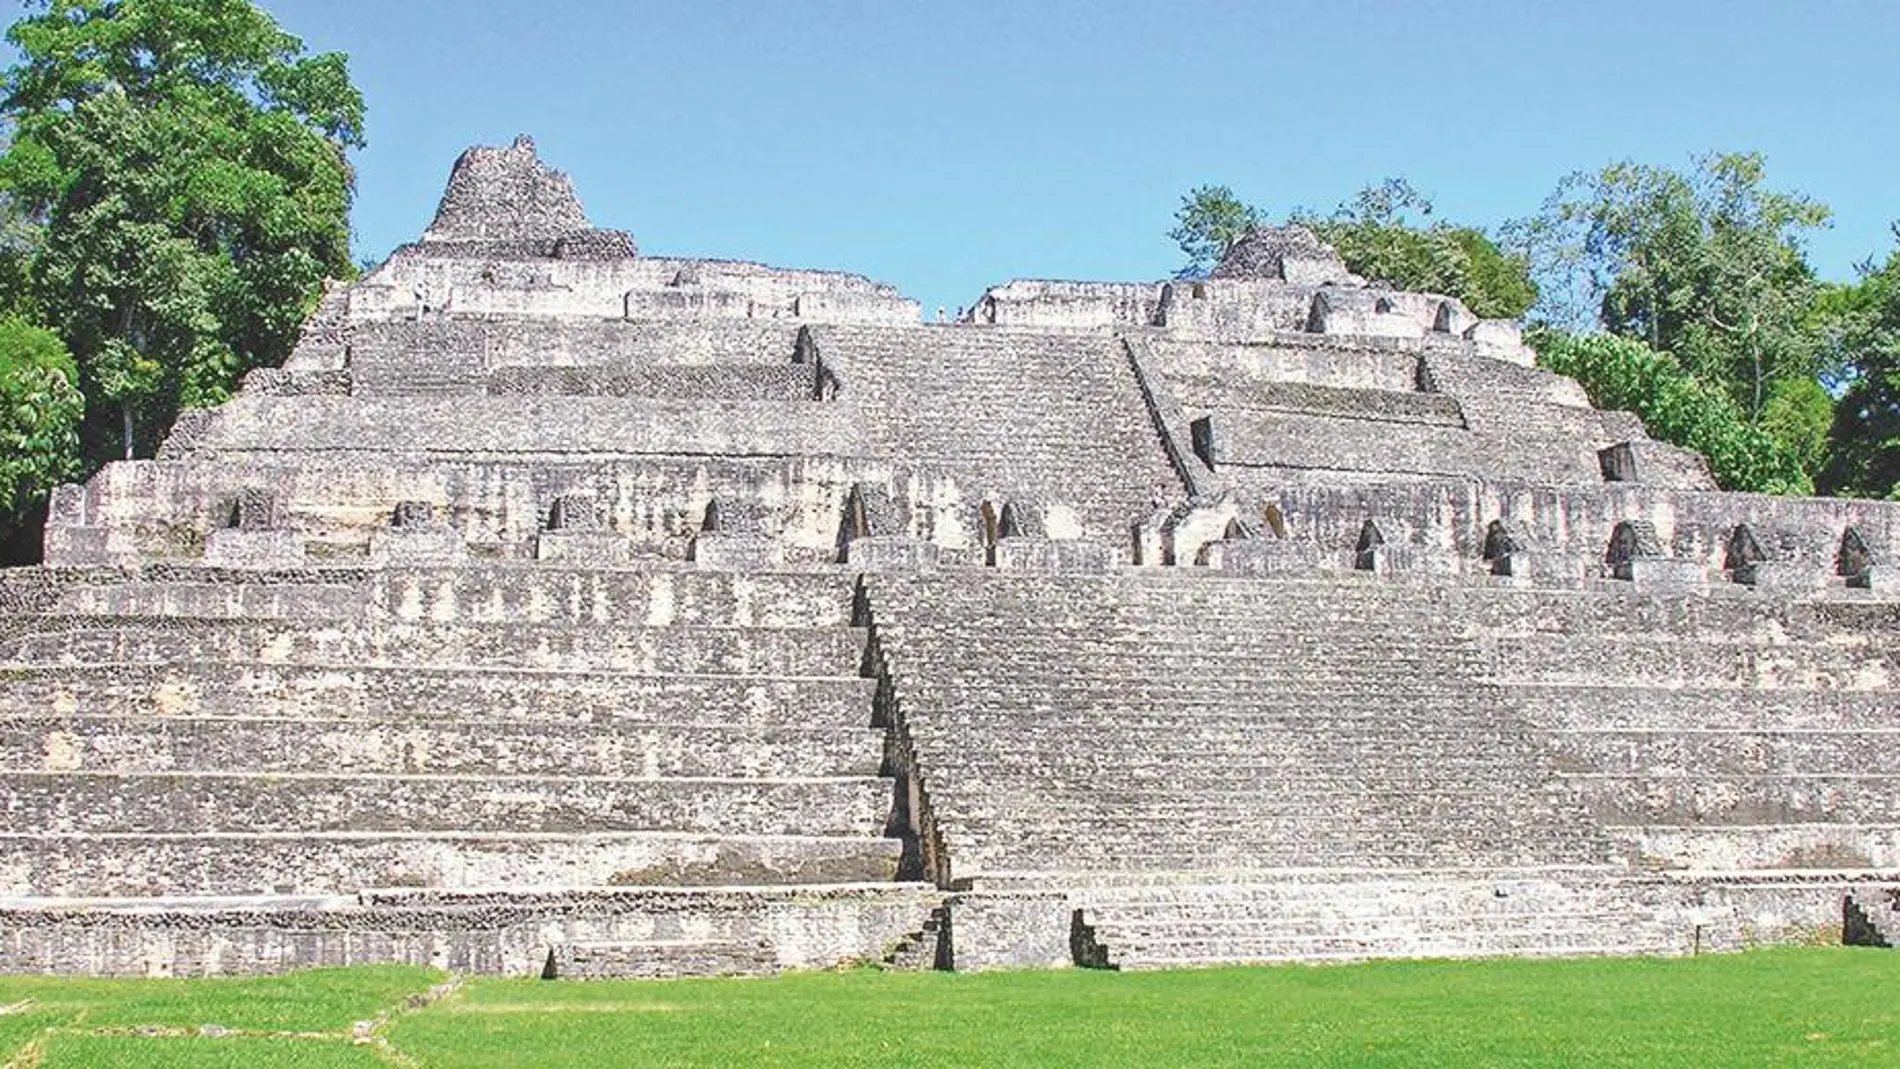 Pirámide de Caana, como un gran rascacielos en mitad de la jungla urbana